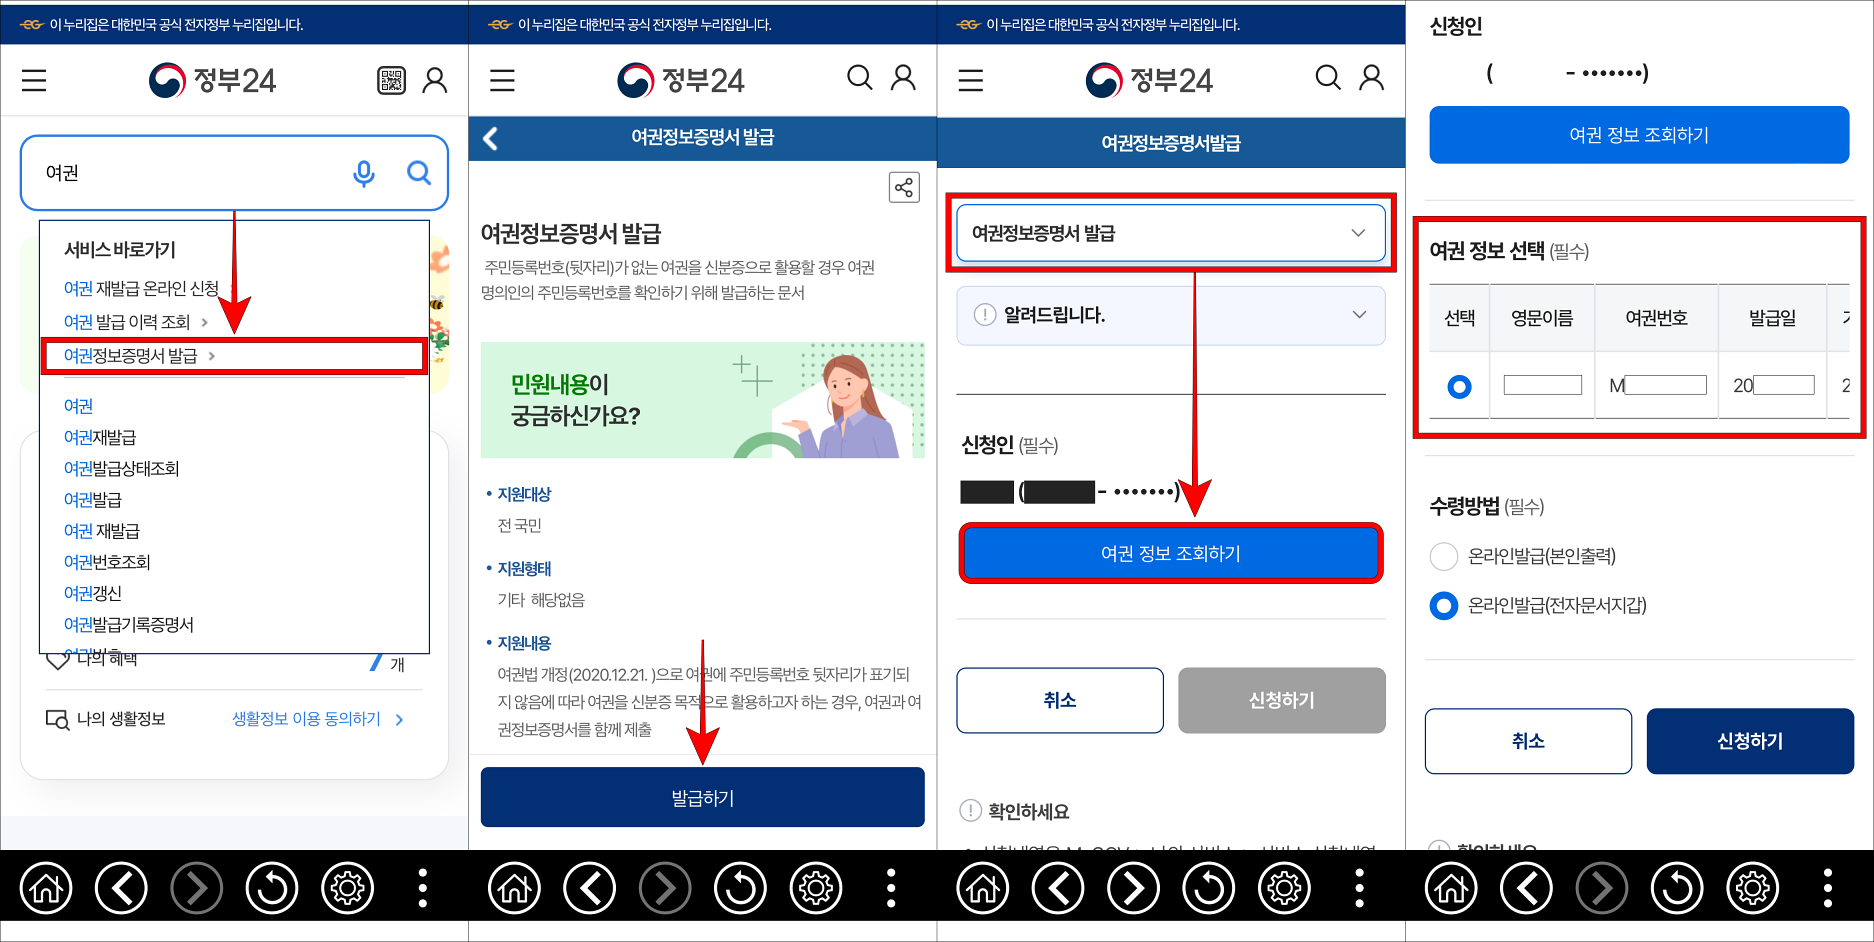 정부24 모바일 앱에 여권을 검색하고 여권정보증명서 발급을 선택한 뒤, 발급하기를 선택하고, 여권 정보 조회하기를 선택하여 여권 정보를 확인